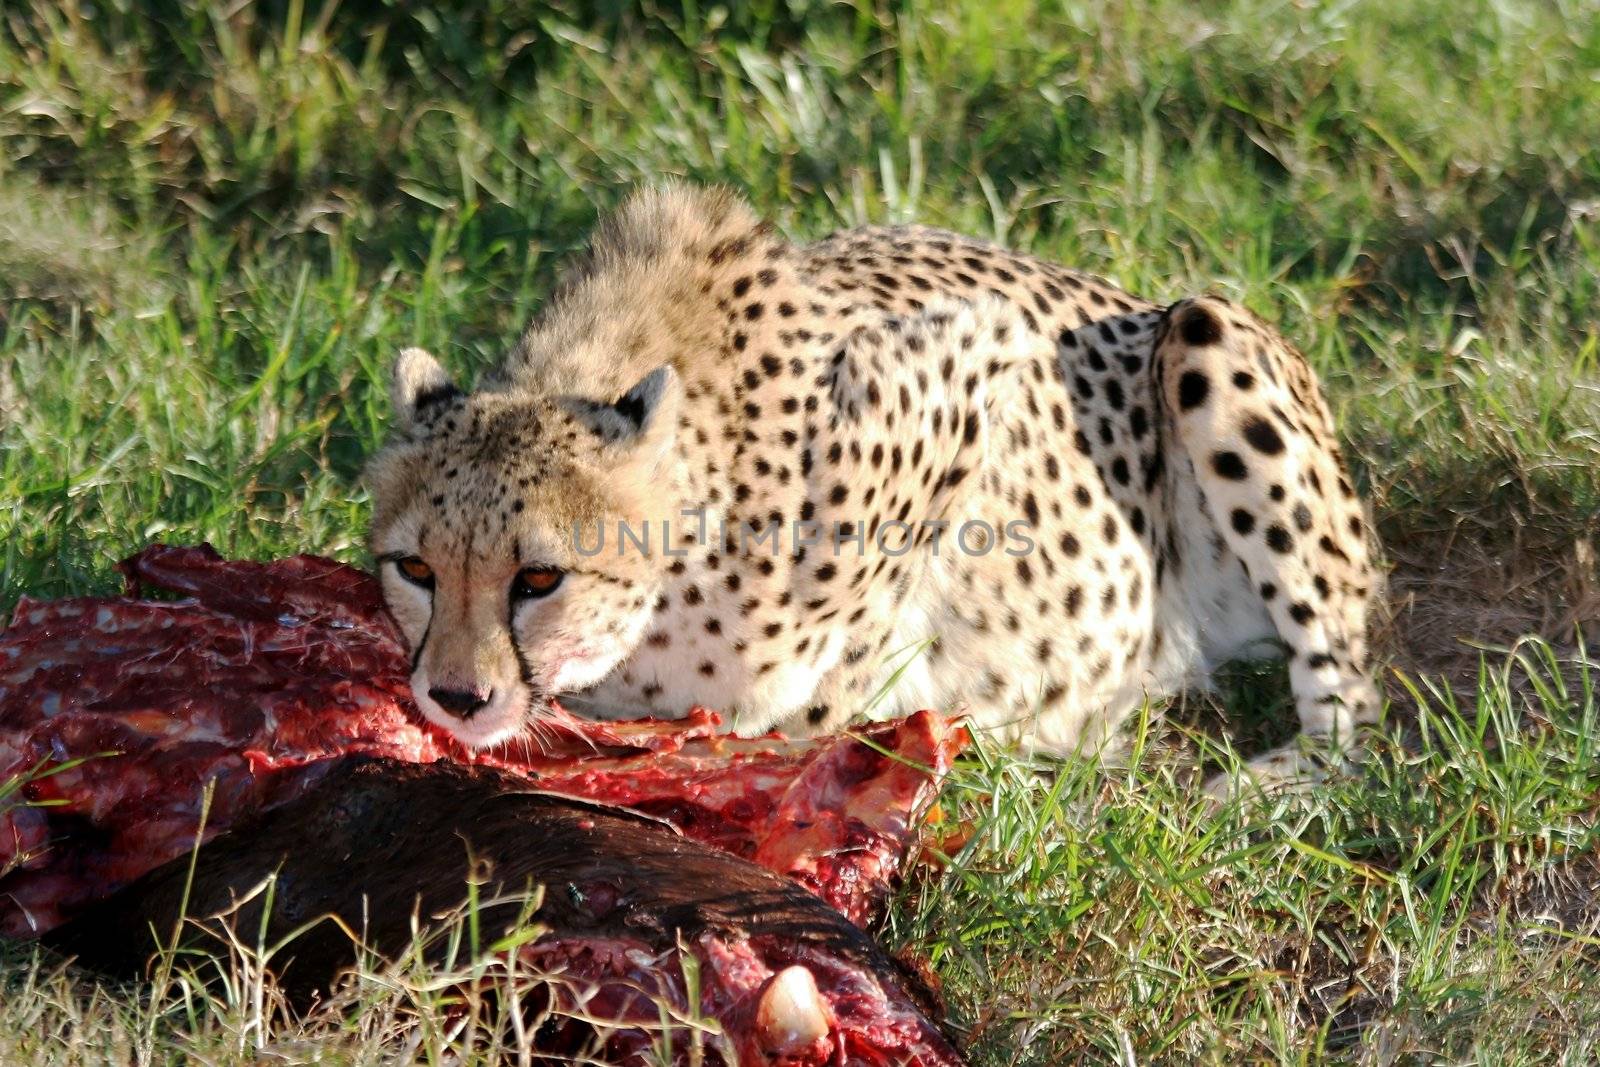 Cheetah at Carcass by fouroaks